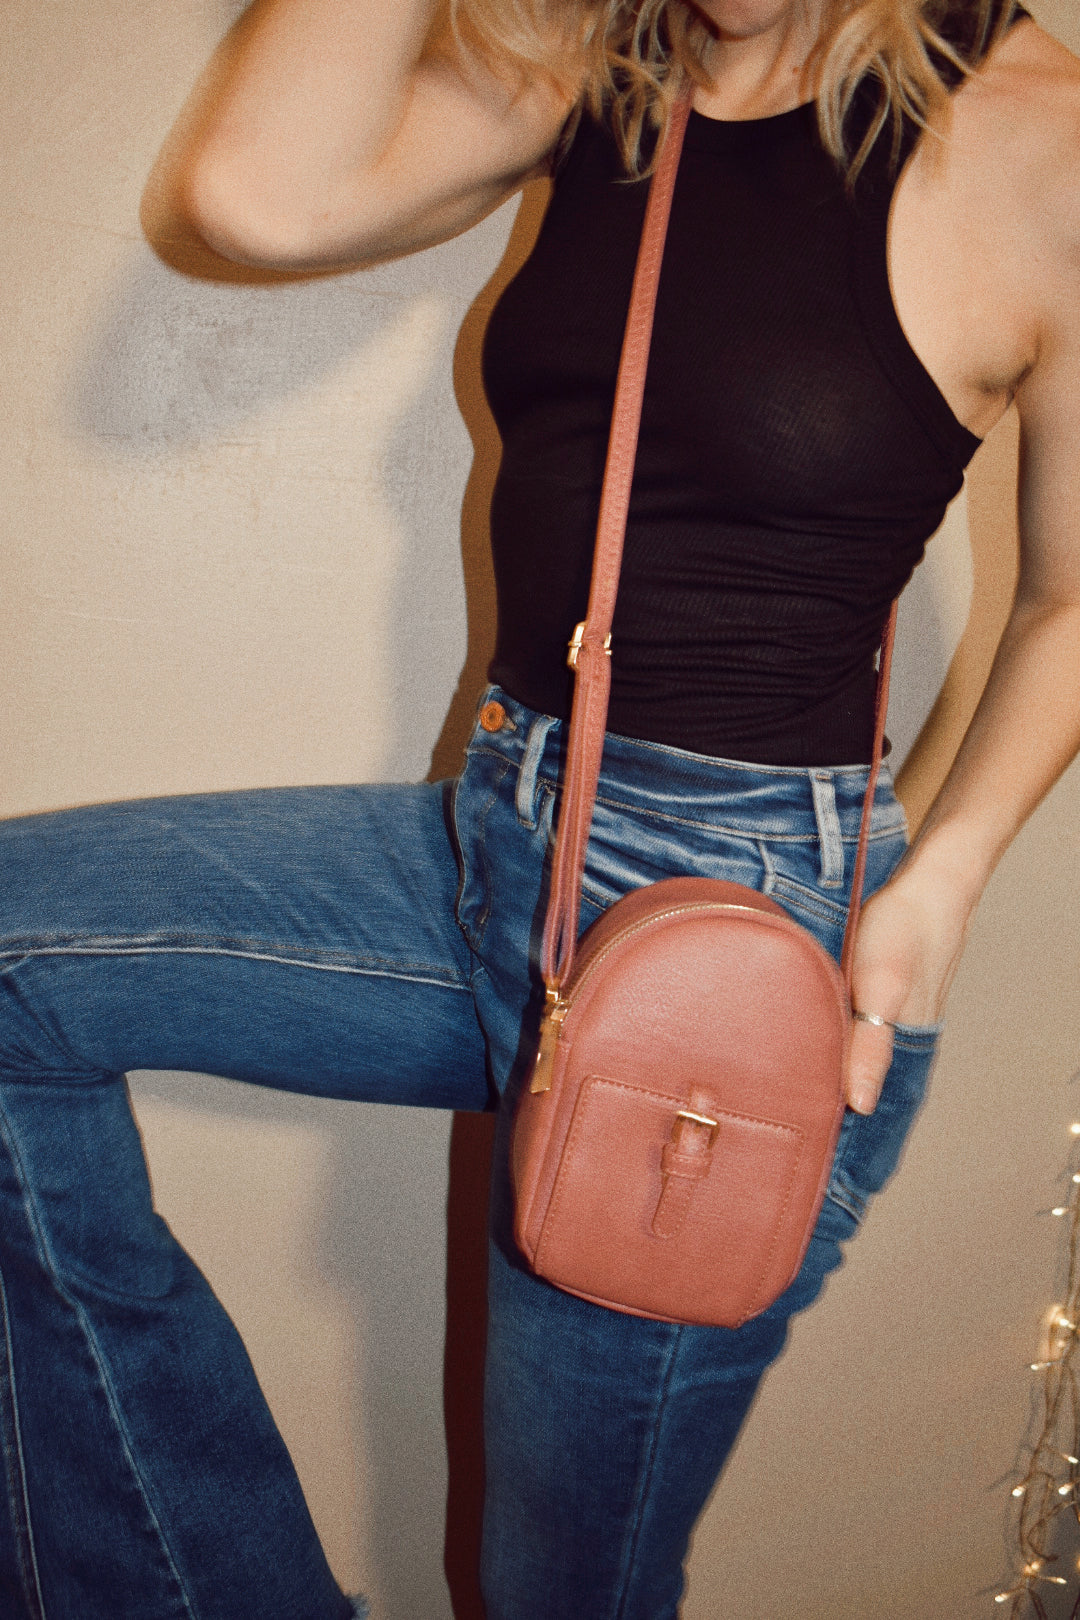 crossbody bag handbag wallet versatile vacation everyday online boutique